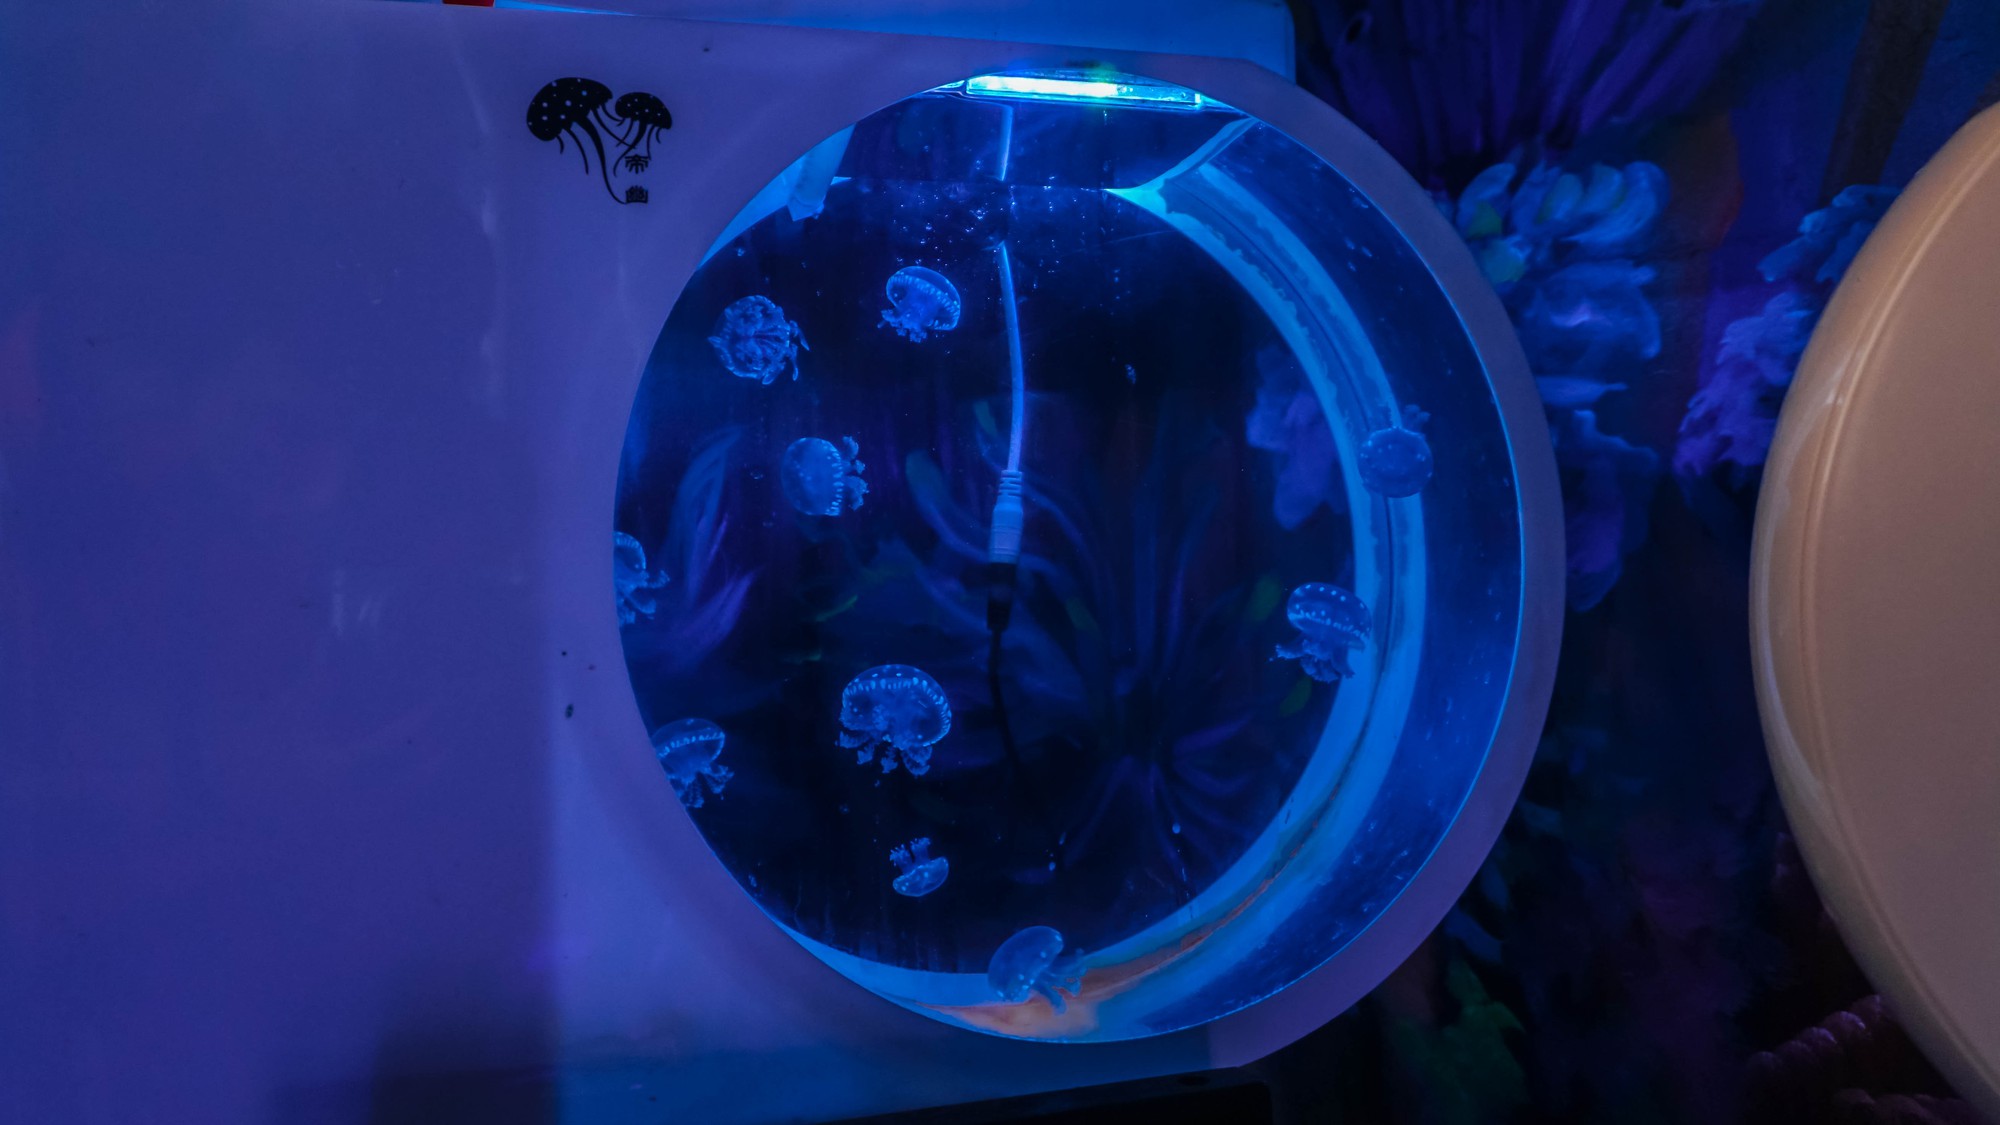 Mô hình nuôi sứa cảnh sống ảo tại nhà của cô gái trẻ ở TP HCM - Ảnh 2.